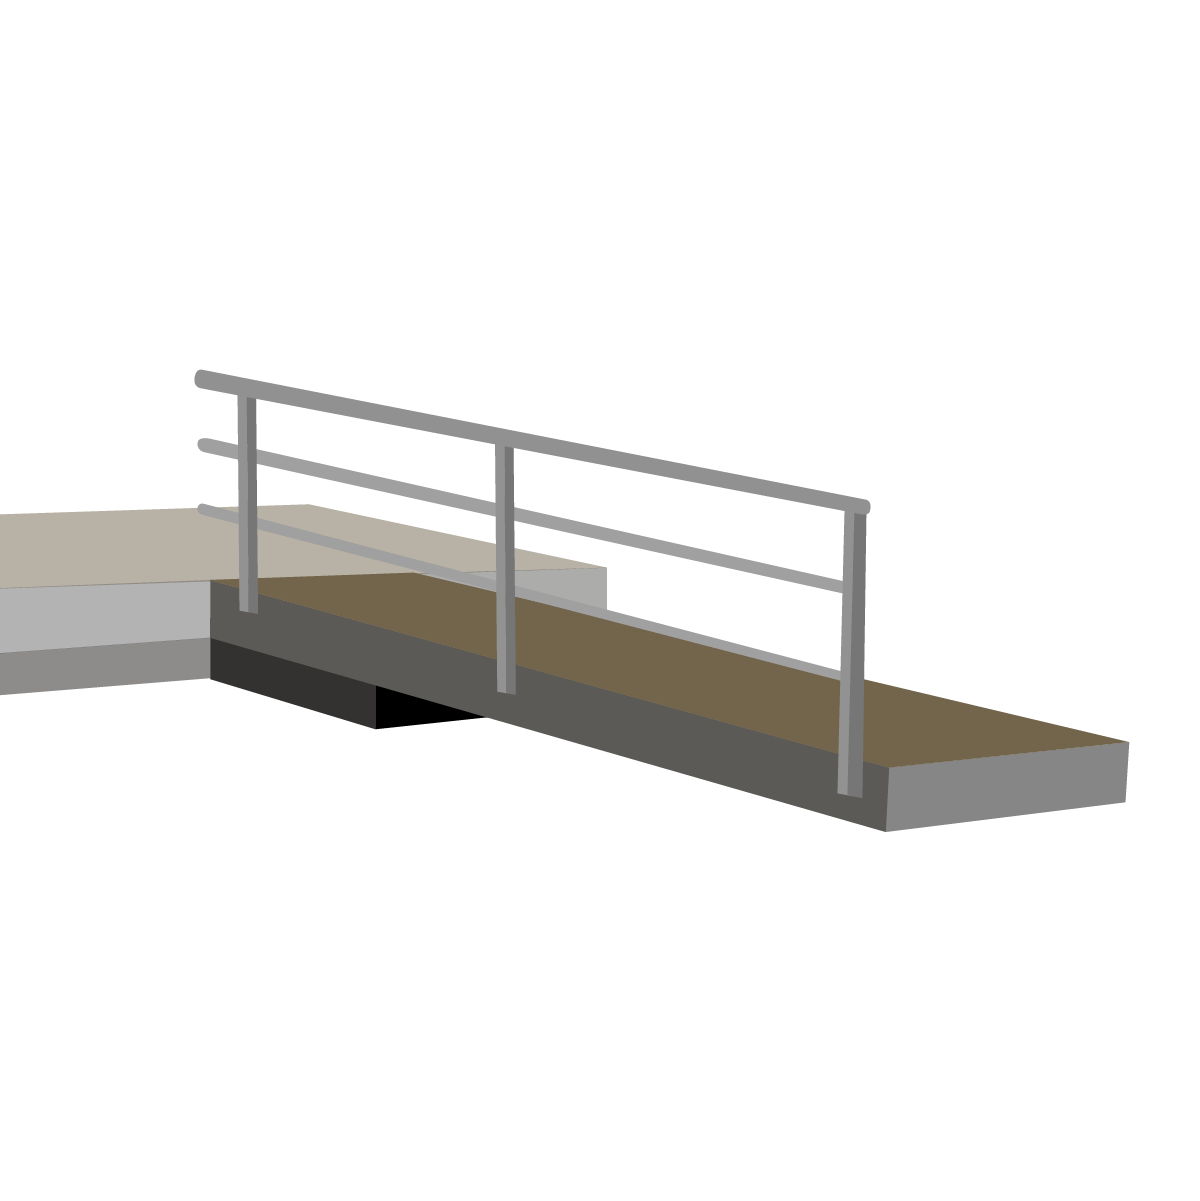 Steel-framed Floating Docks  Floating Docks for Ponds and Lakes